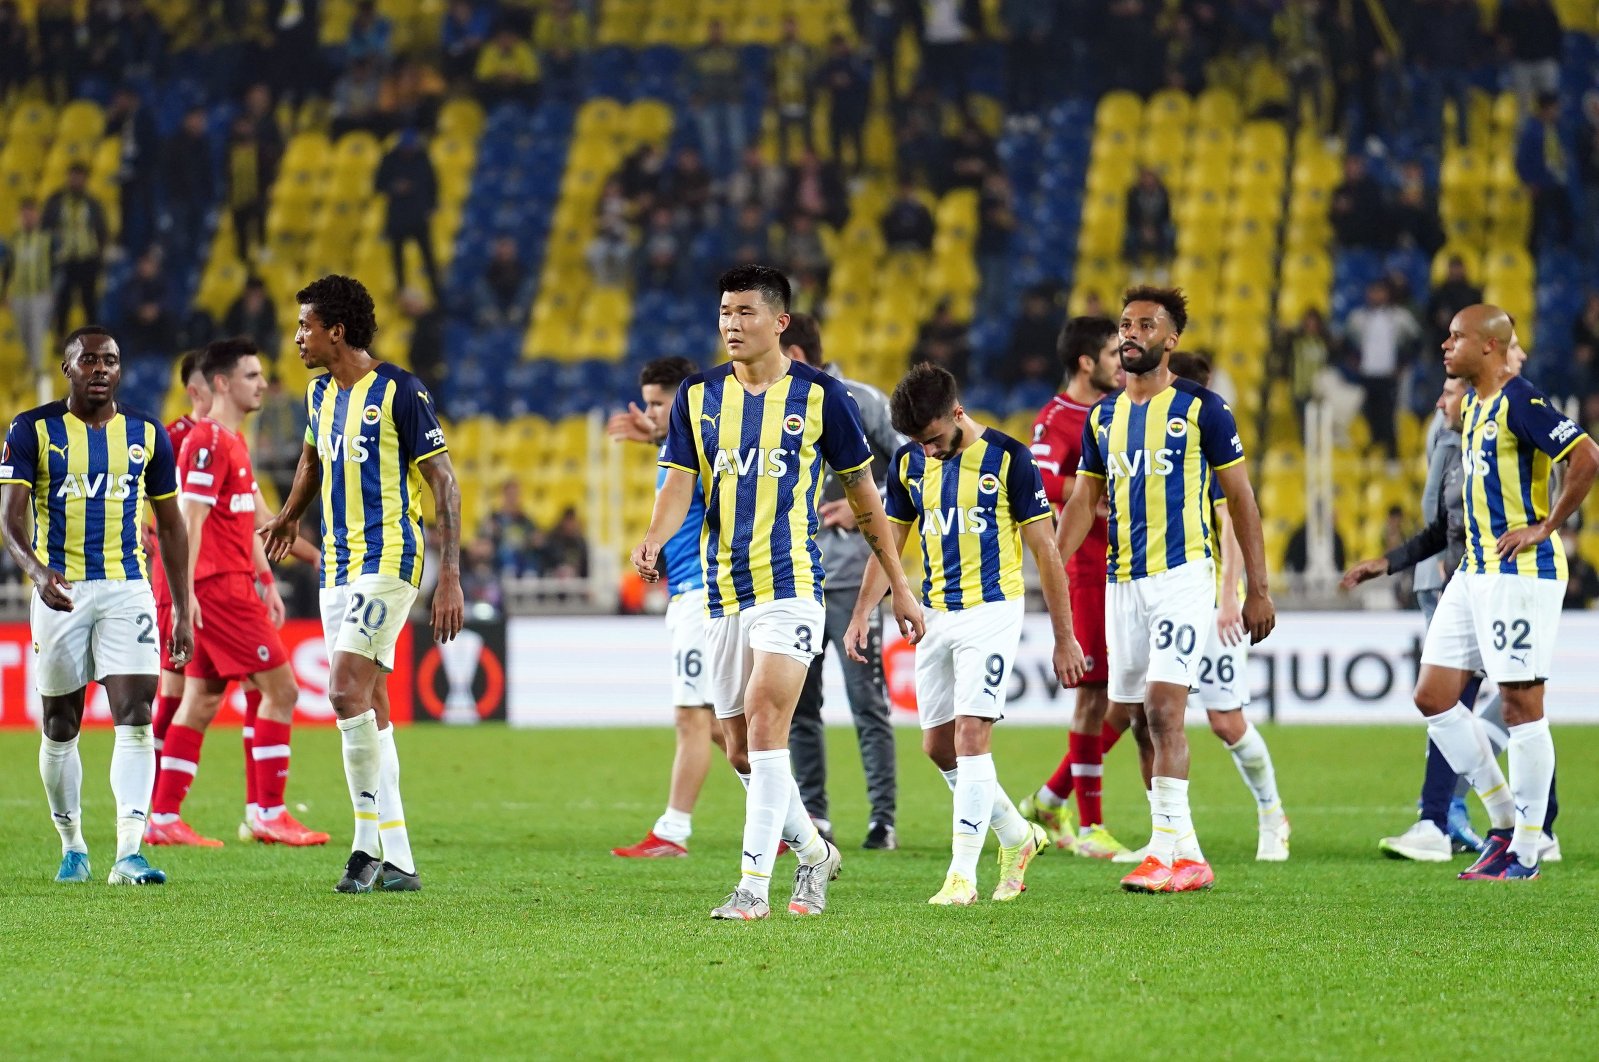 Fenerbahçe vs Antwerp | Sporting News